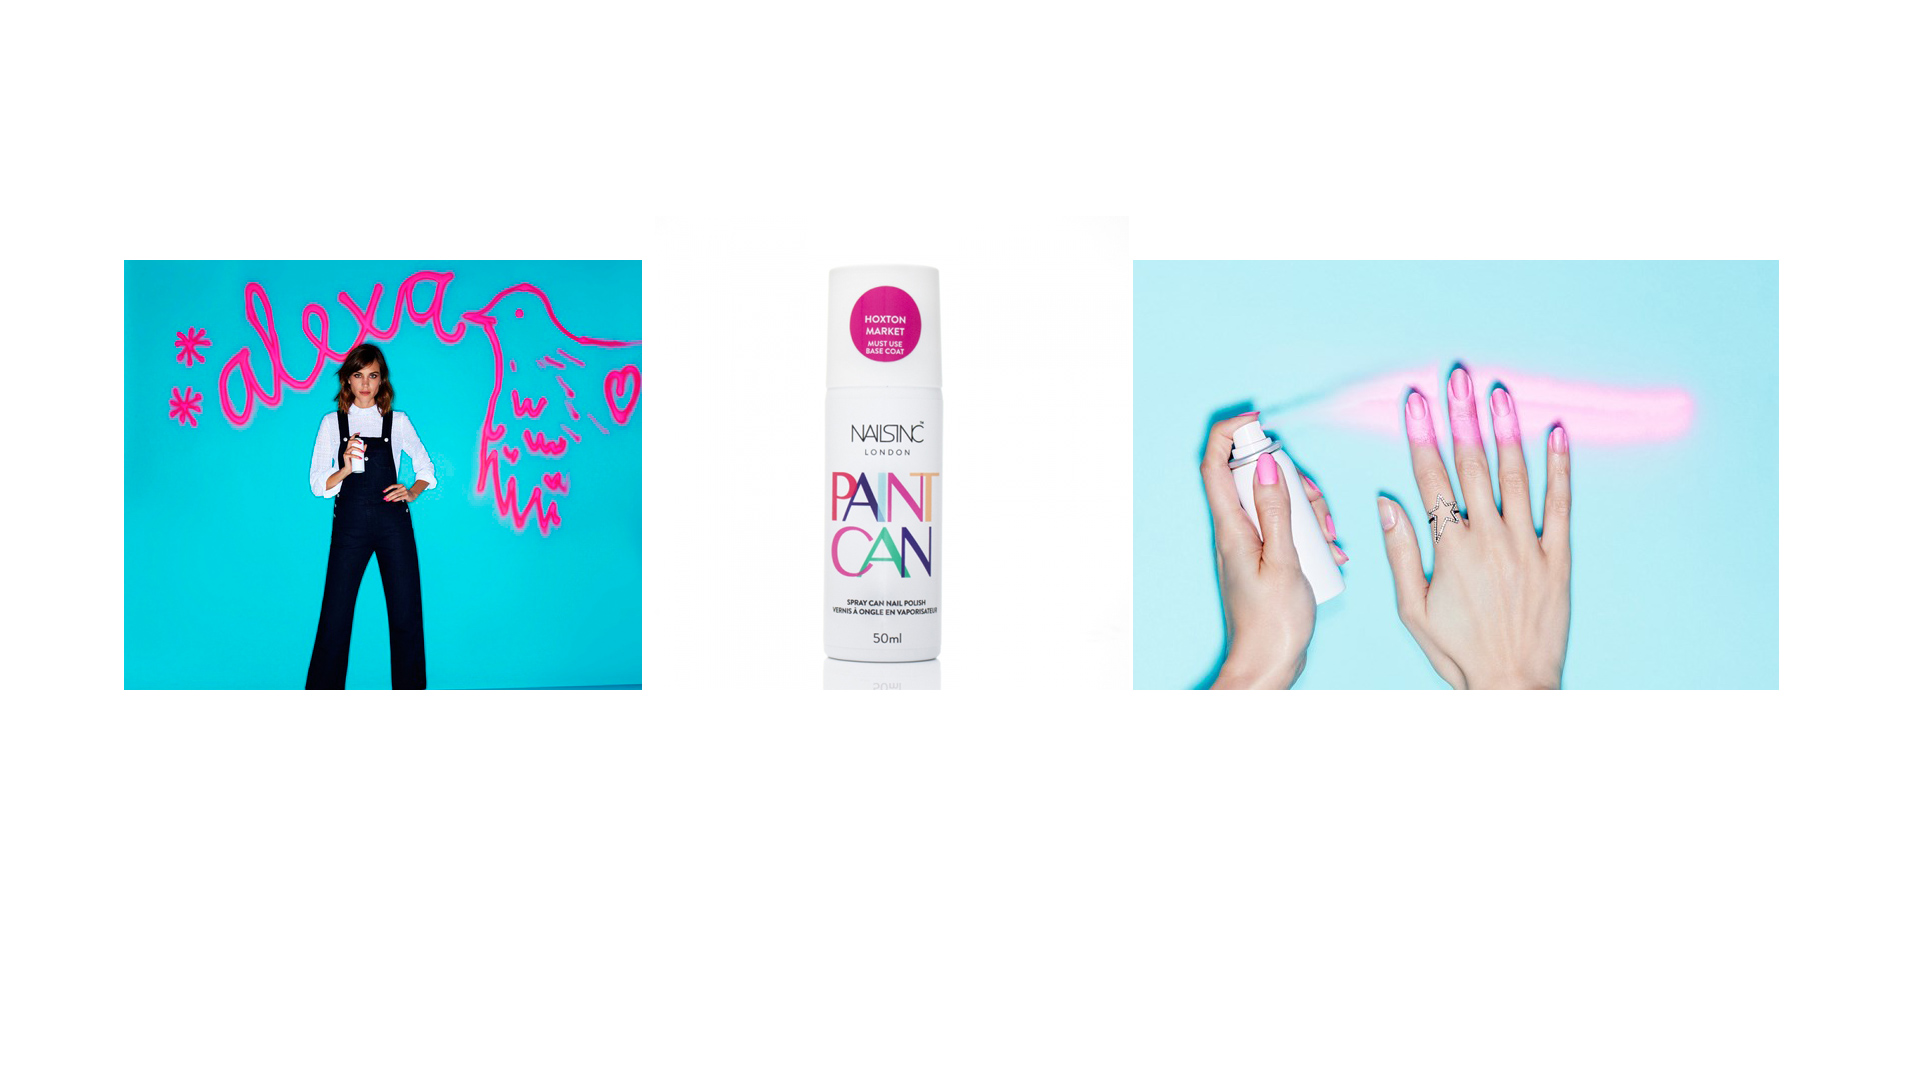 La empresa de pinturas de uñas Nail Inc lanzará el próximo 12 de noviembre una innovación para las manos